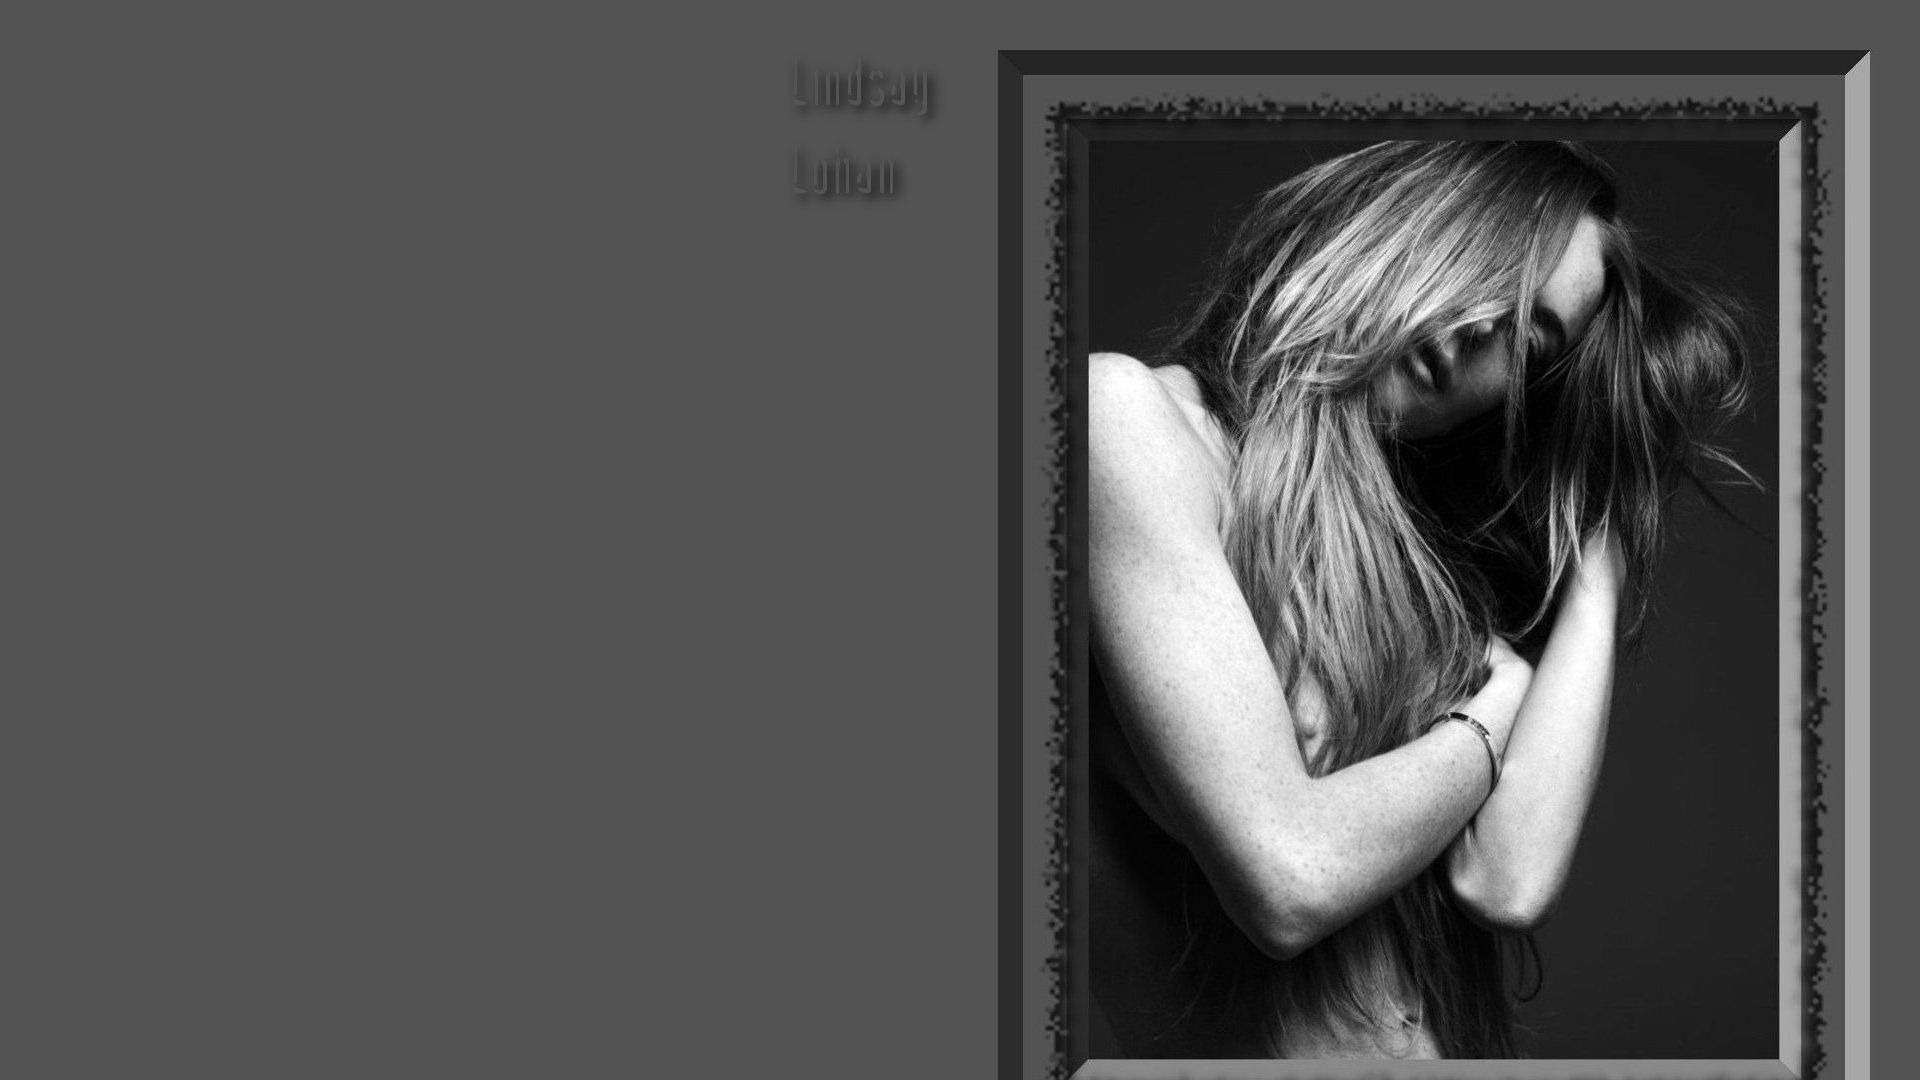 Lindsay Lohan 林赛·罗韩 美女壁纸24 - 1920x1080